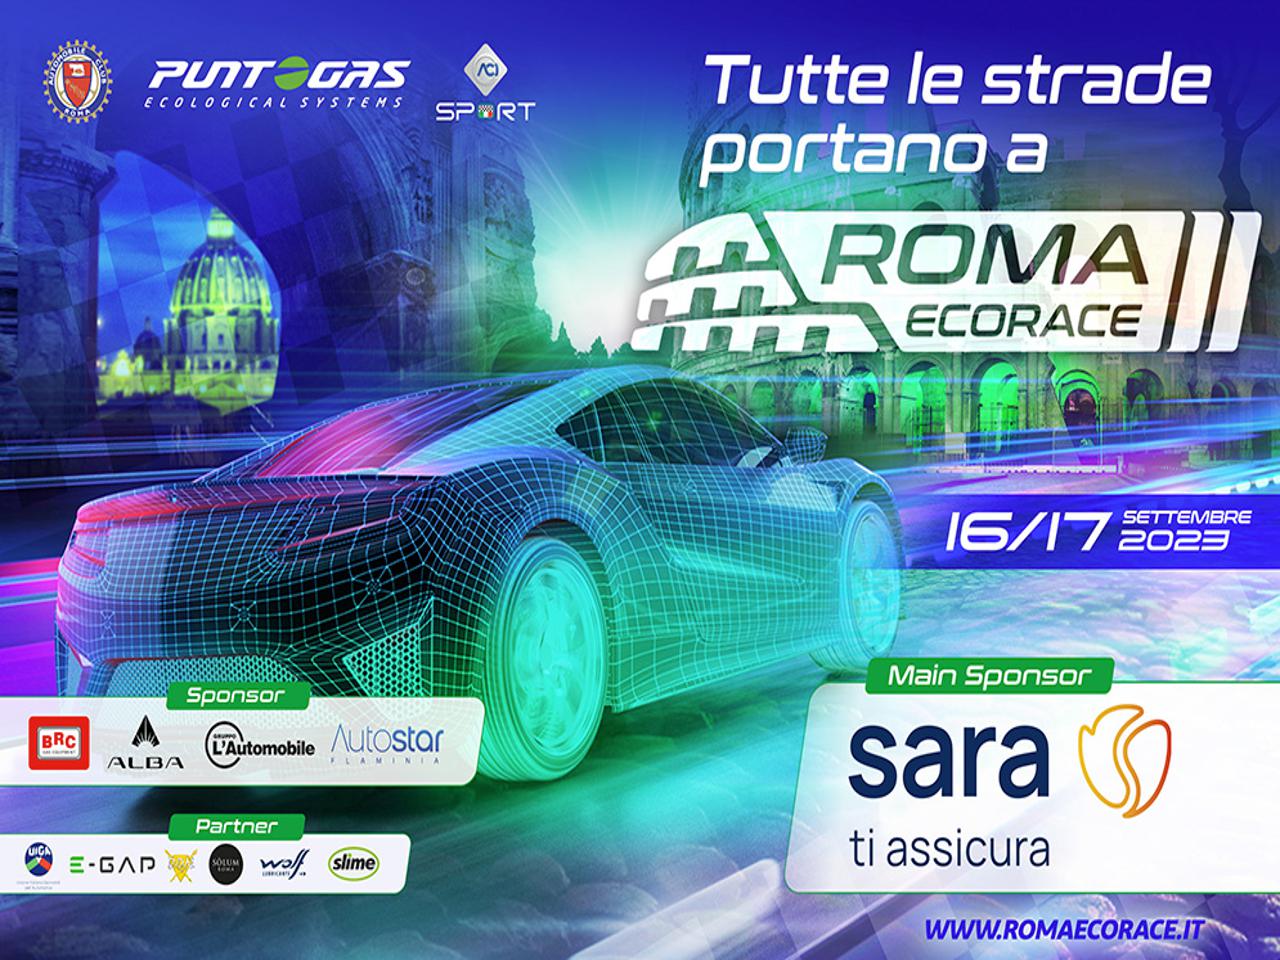 Mobilità, al via il 16 settembre la prima Roma Eco Race